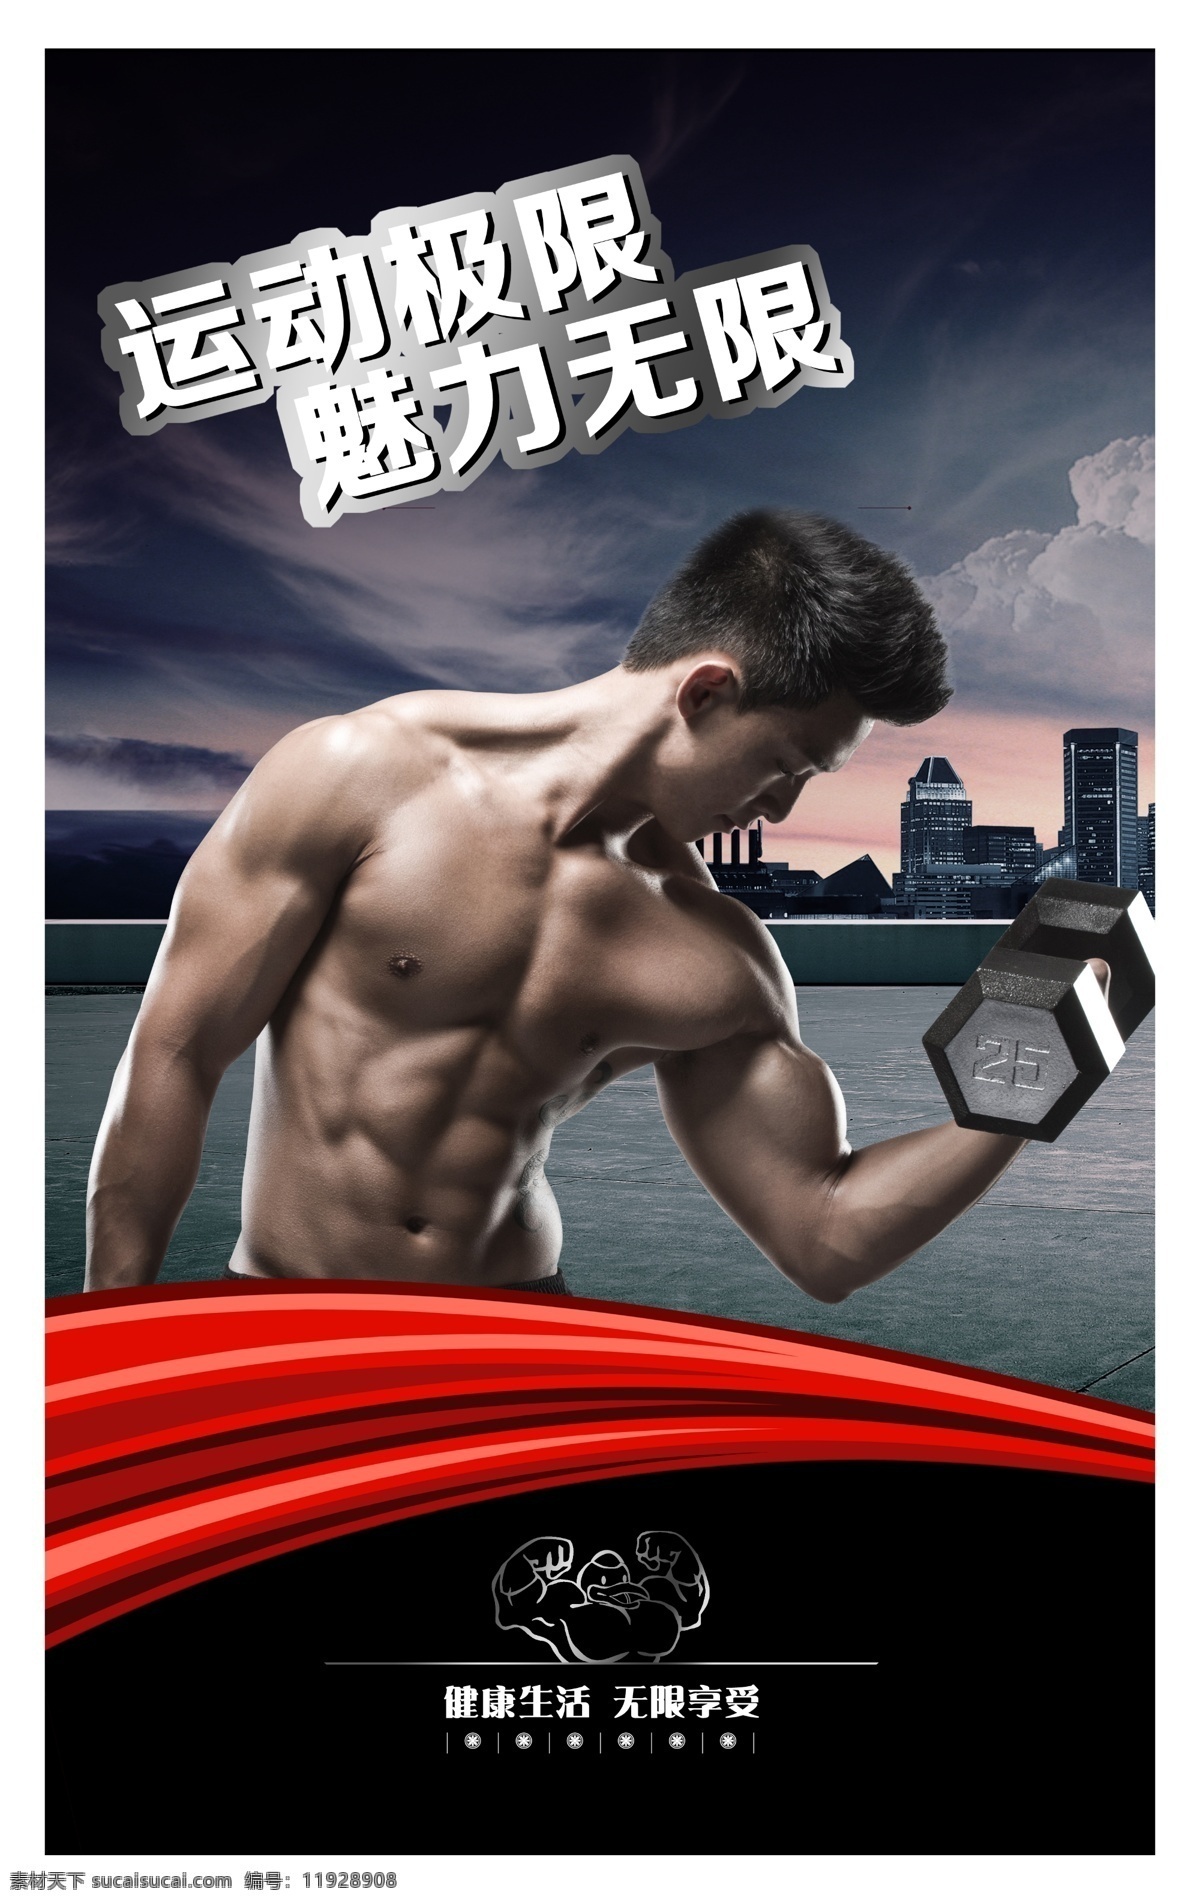 健身 俱乐部 背景 健身海报 健身图片 健身人物 戛纳很 运动 黑色